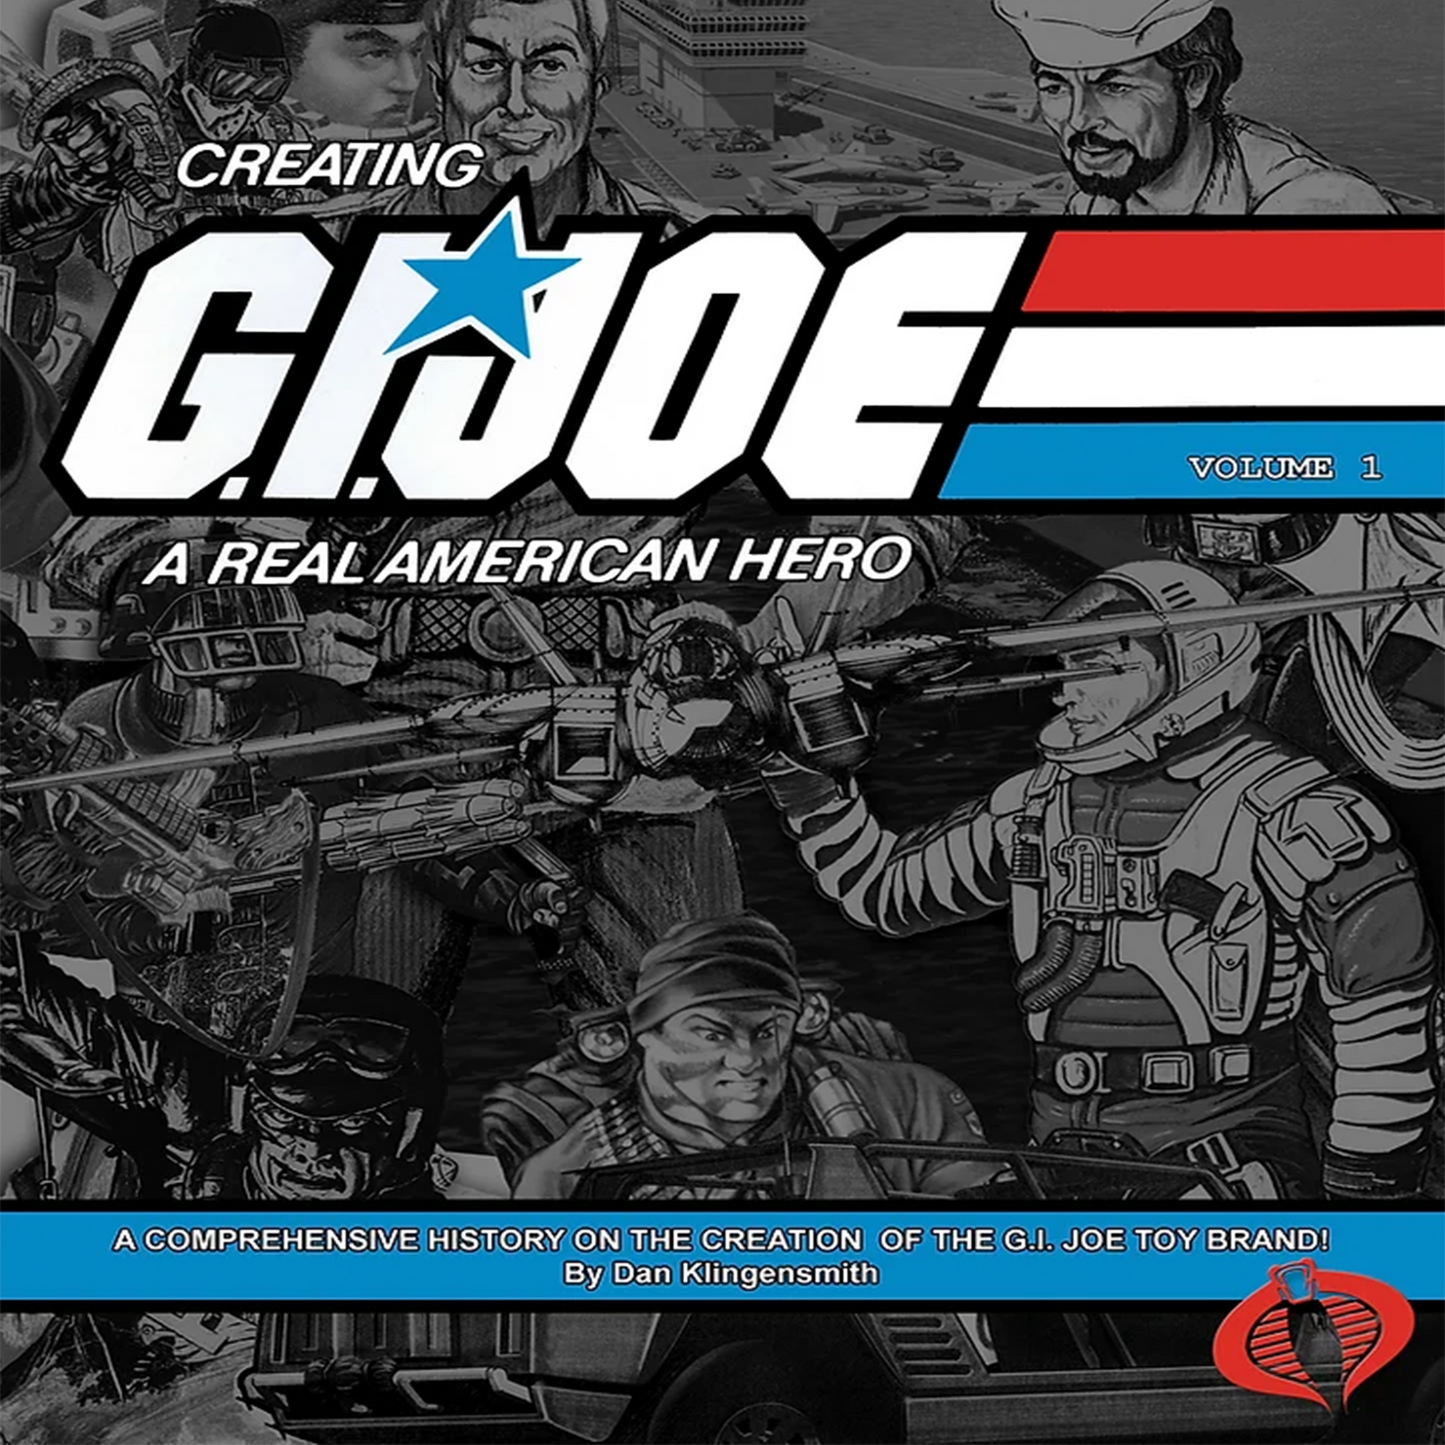 Creating G.I. Joe: A Real American Hero Volume 1